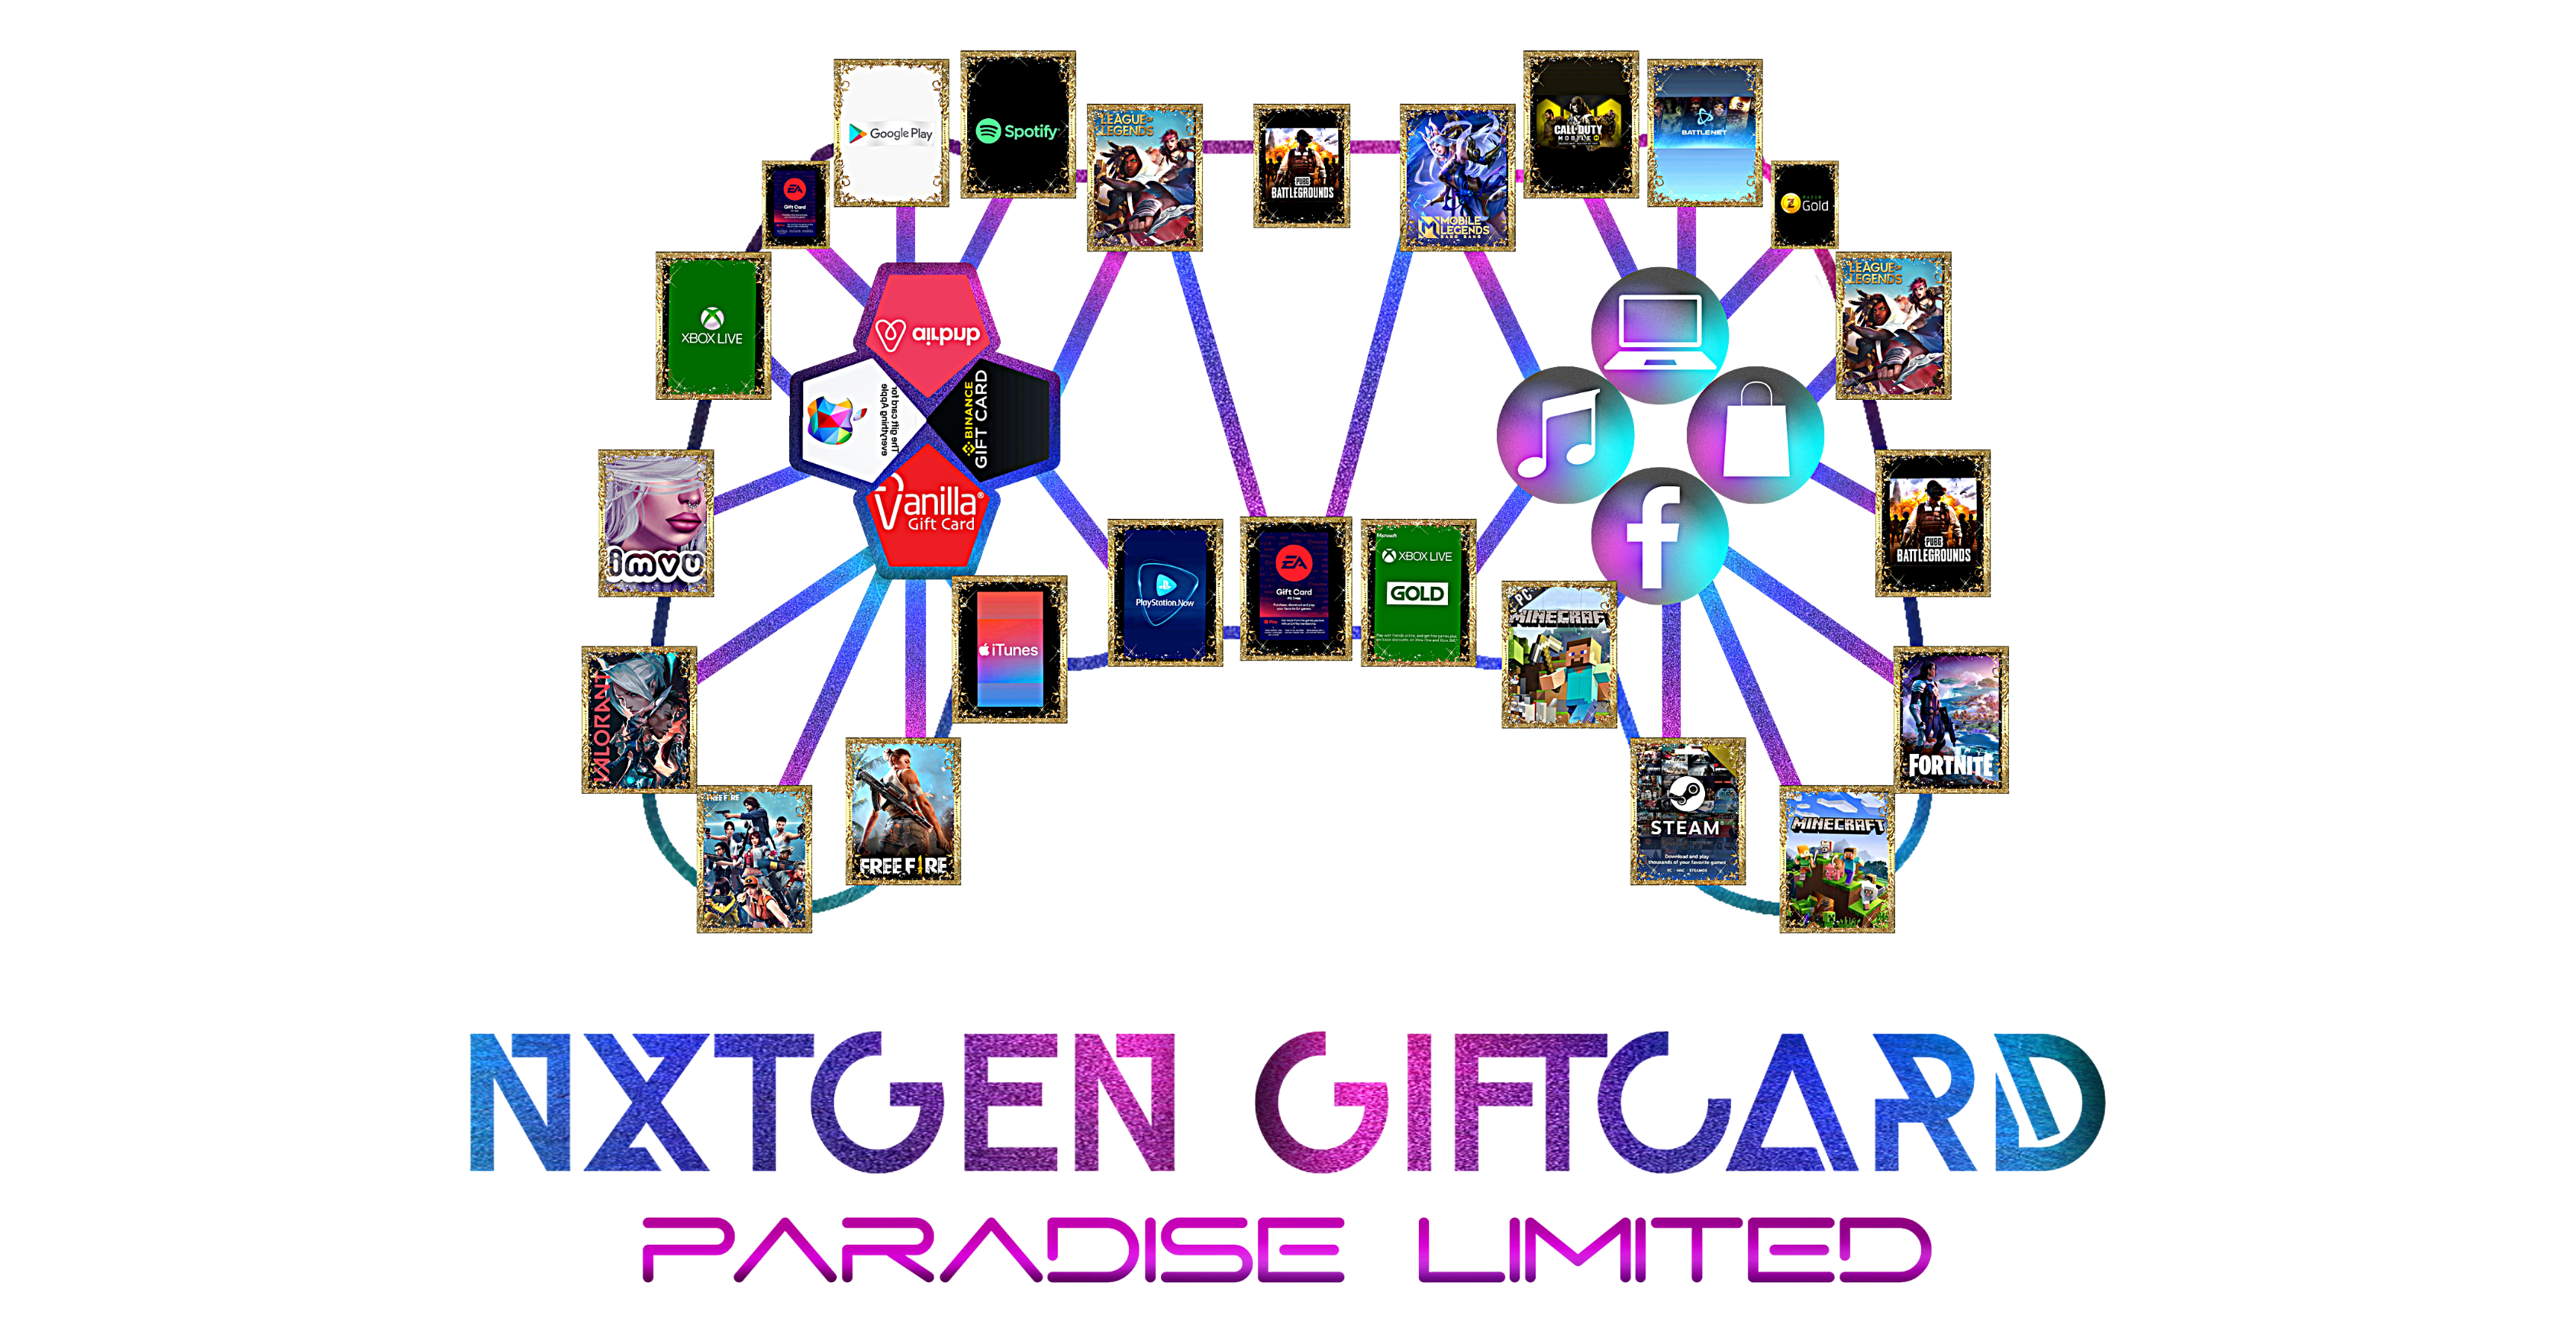 NxtGen Giftcard Paradise